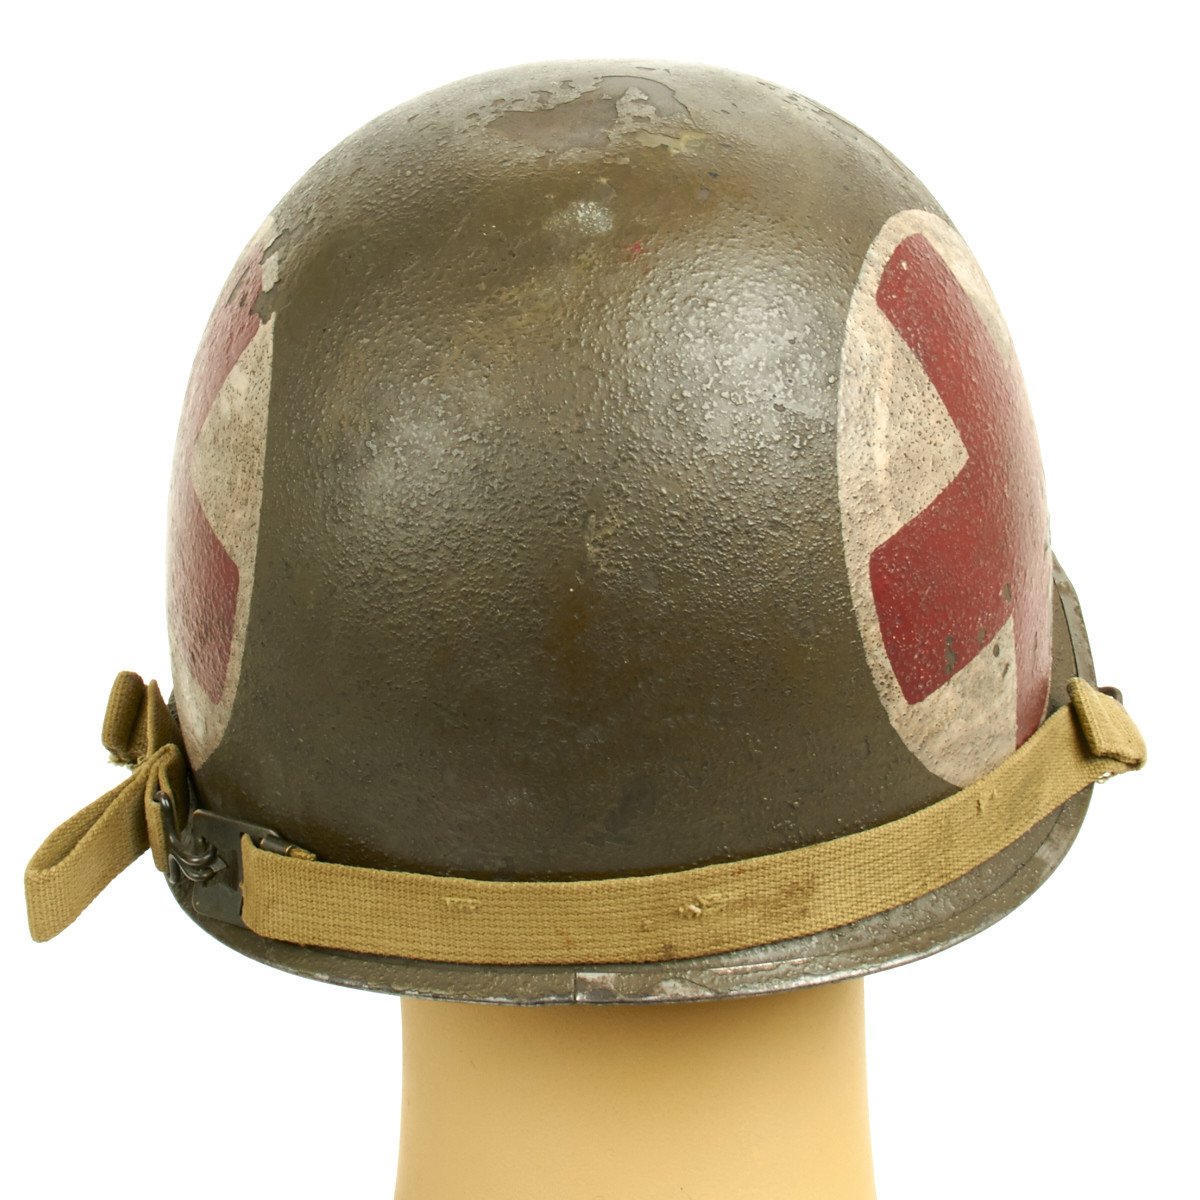 Helmet Ww2 American Medic Helmet - us m1 helmet wwii roblox